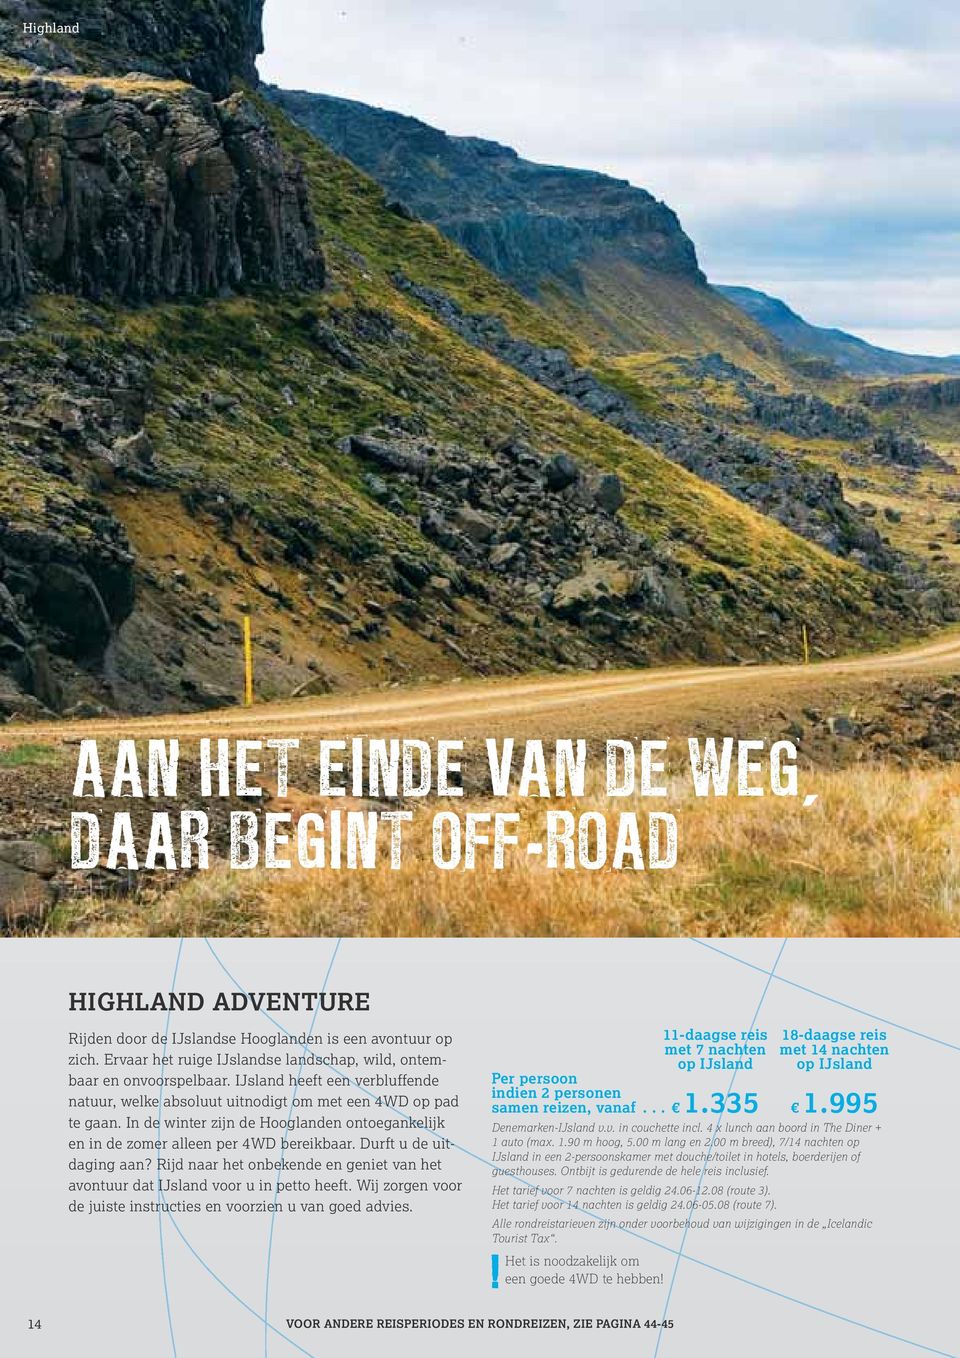 In de winter zijn de Hooglanden ontoegankelijk en in de zomer alleen per 4WD bereikbaar. Durft u de uitdaging aan? Rijd naar het onbekende en geniet van het avontuur dat IJsland voor u in petto heeft.